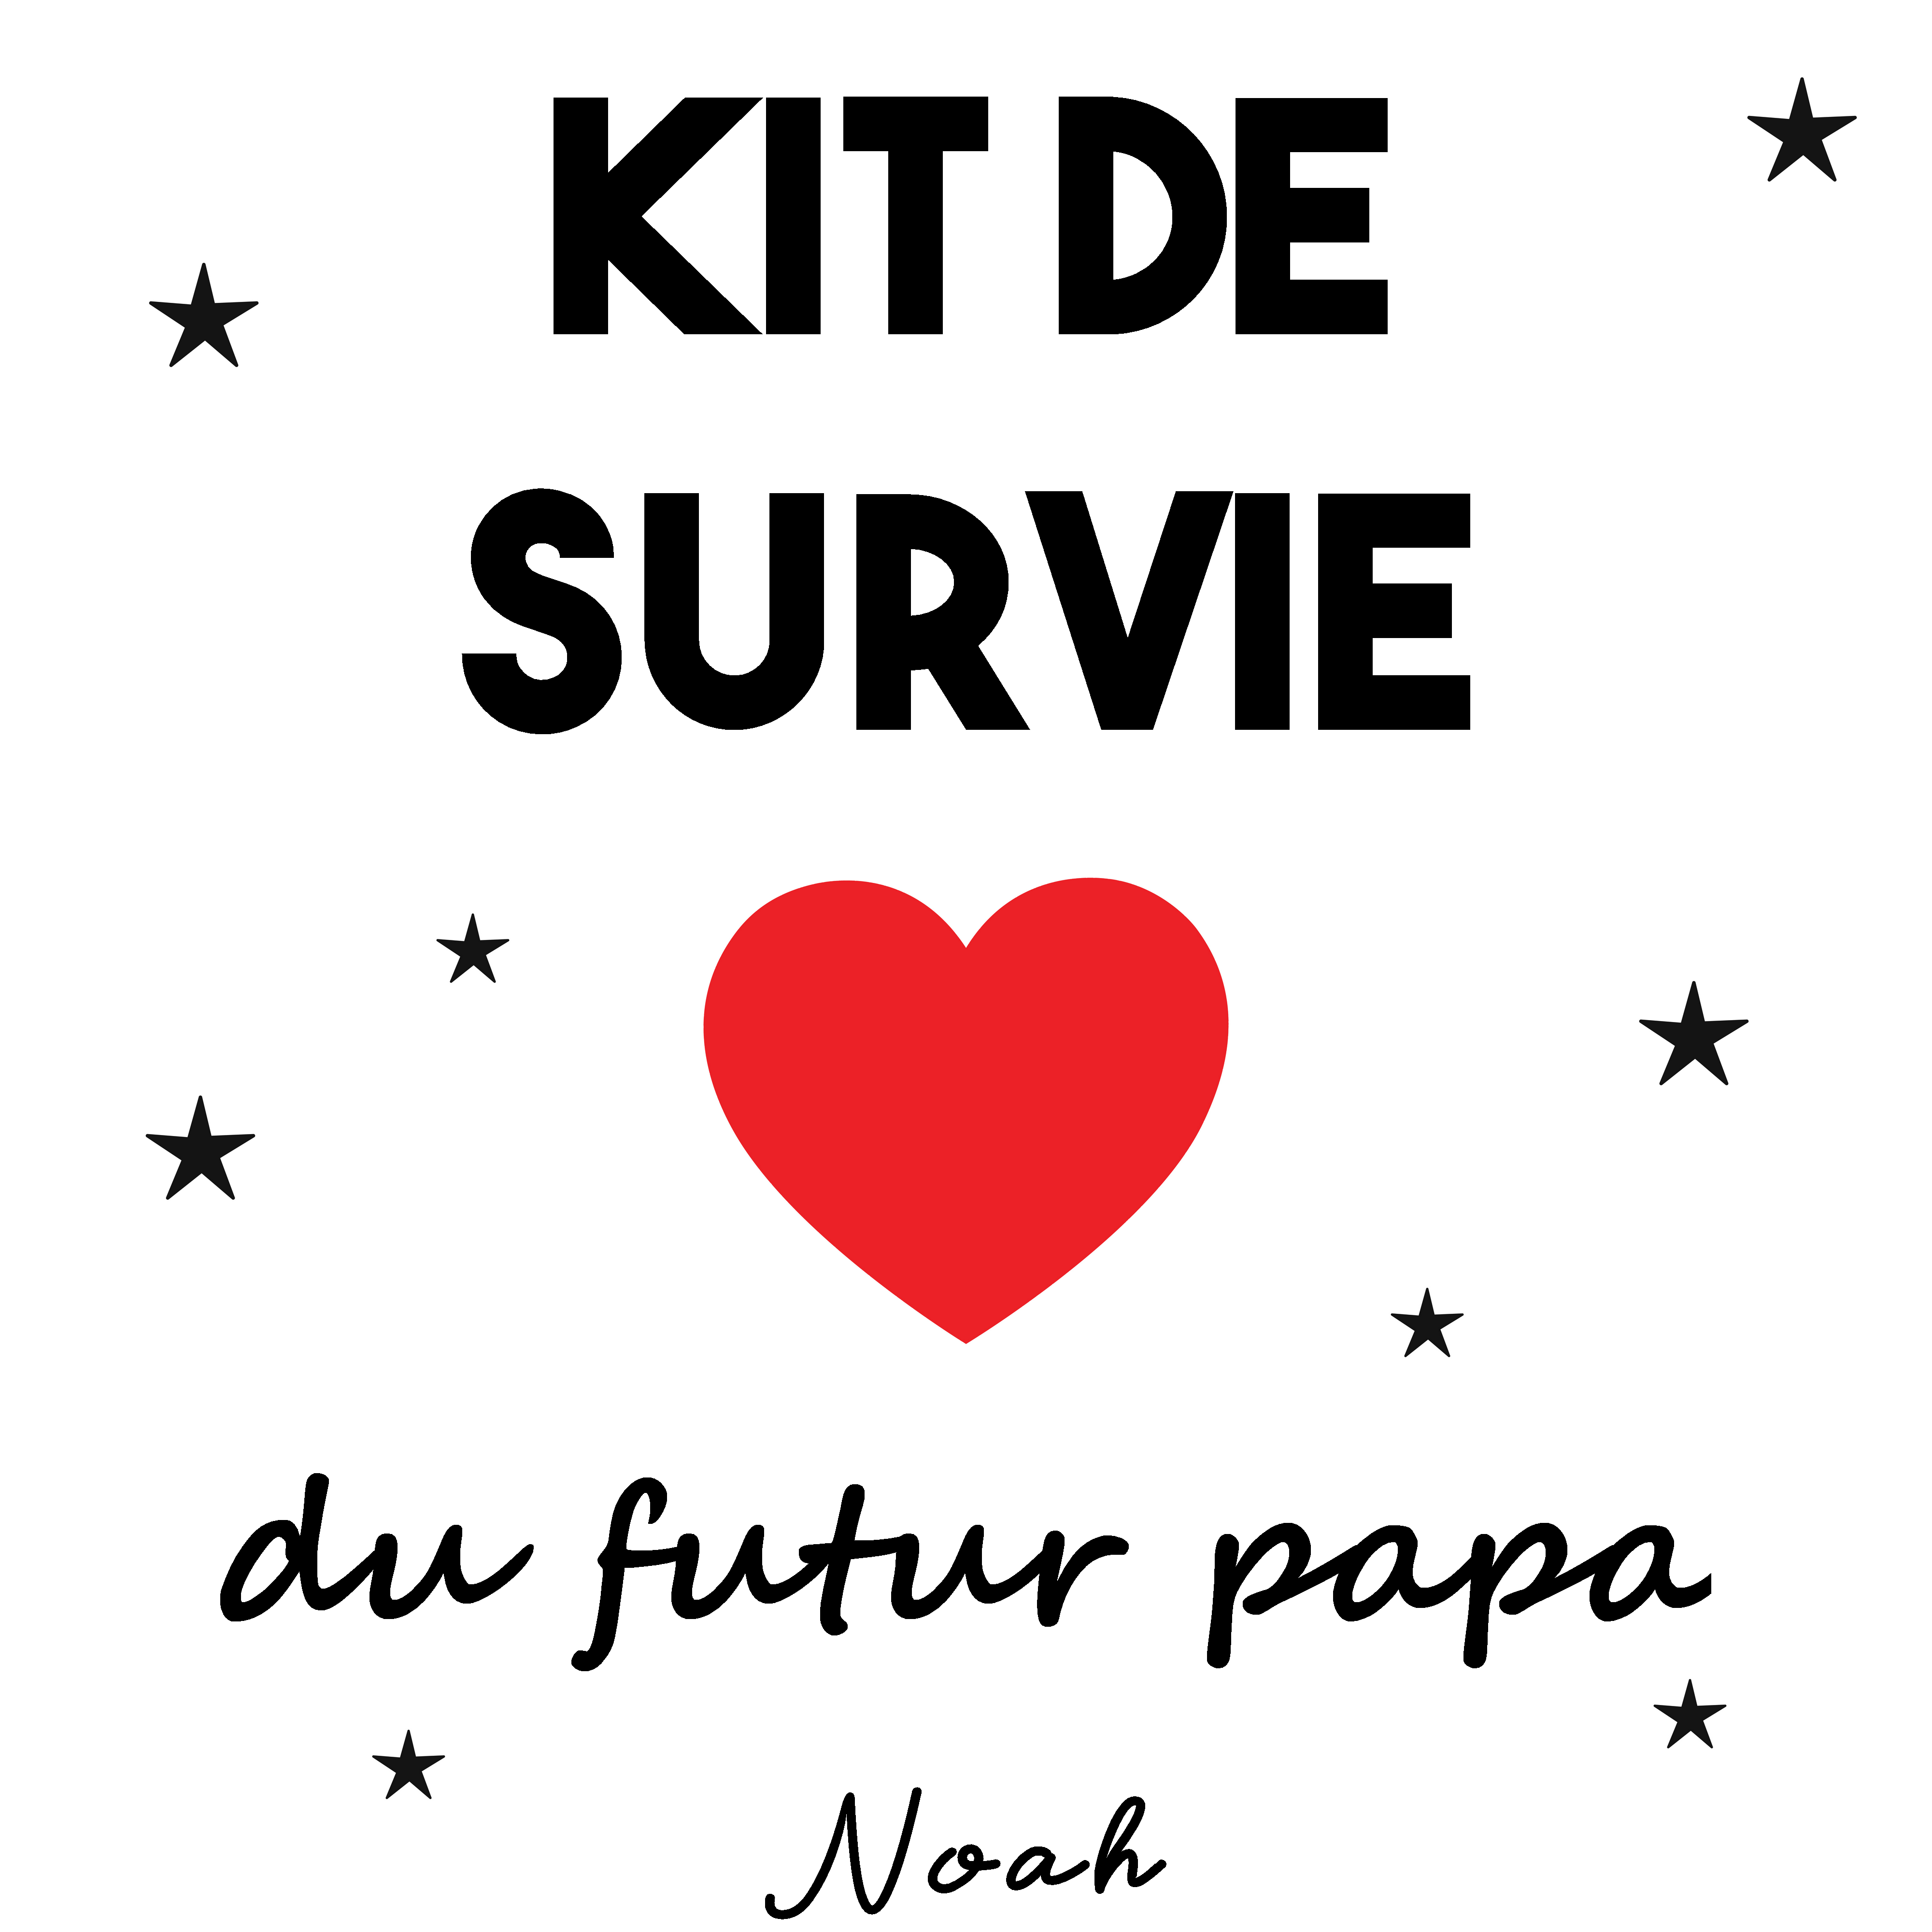 Kit de survie du futur papa - Coeur